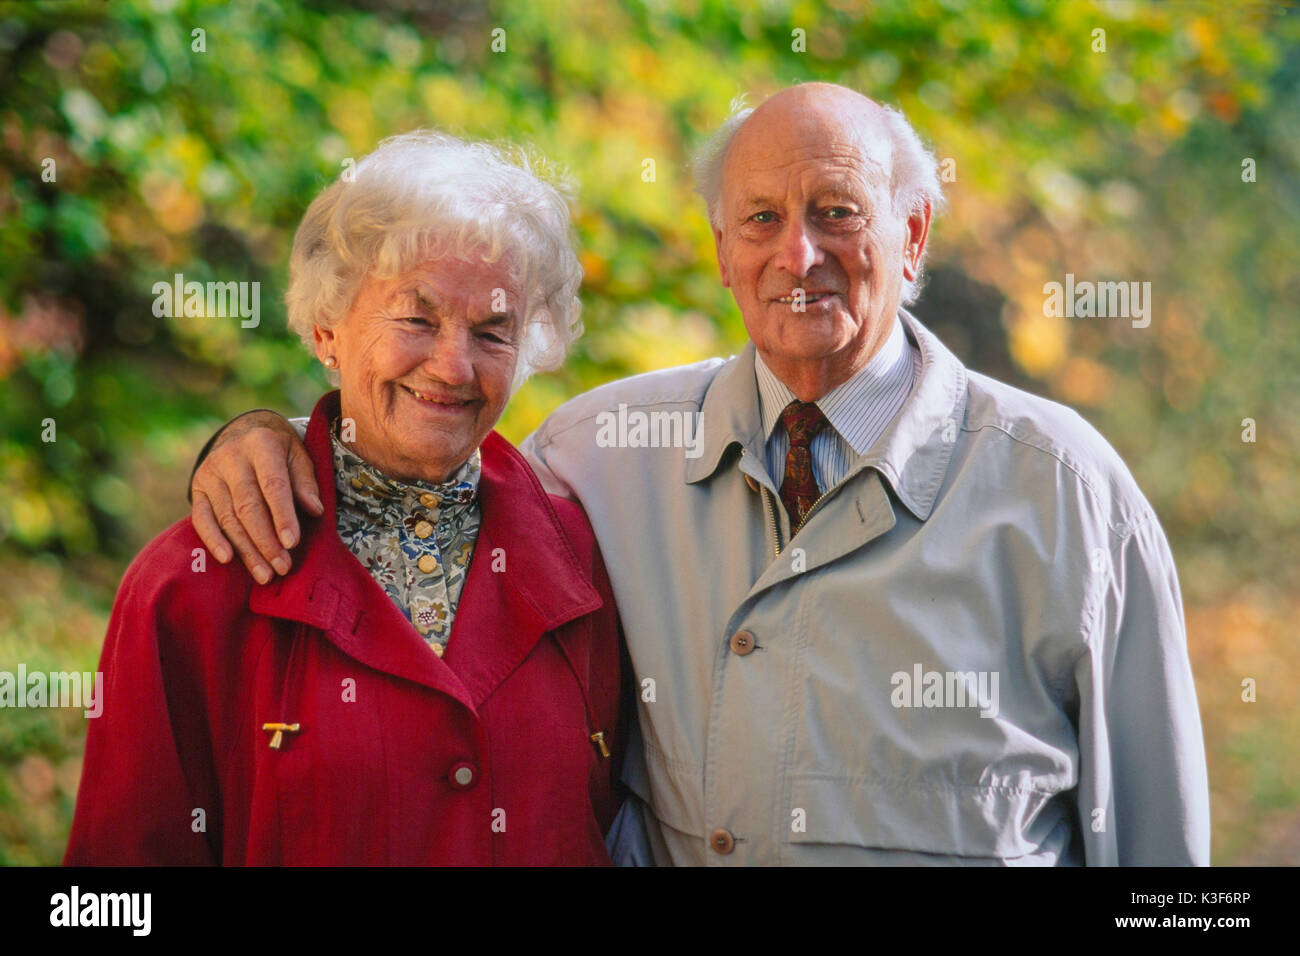 Ritratto della vecchia coppia sposata, l'uomo pone il suo braccio intorno alla donna Foto Stock